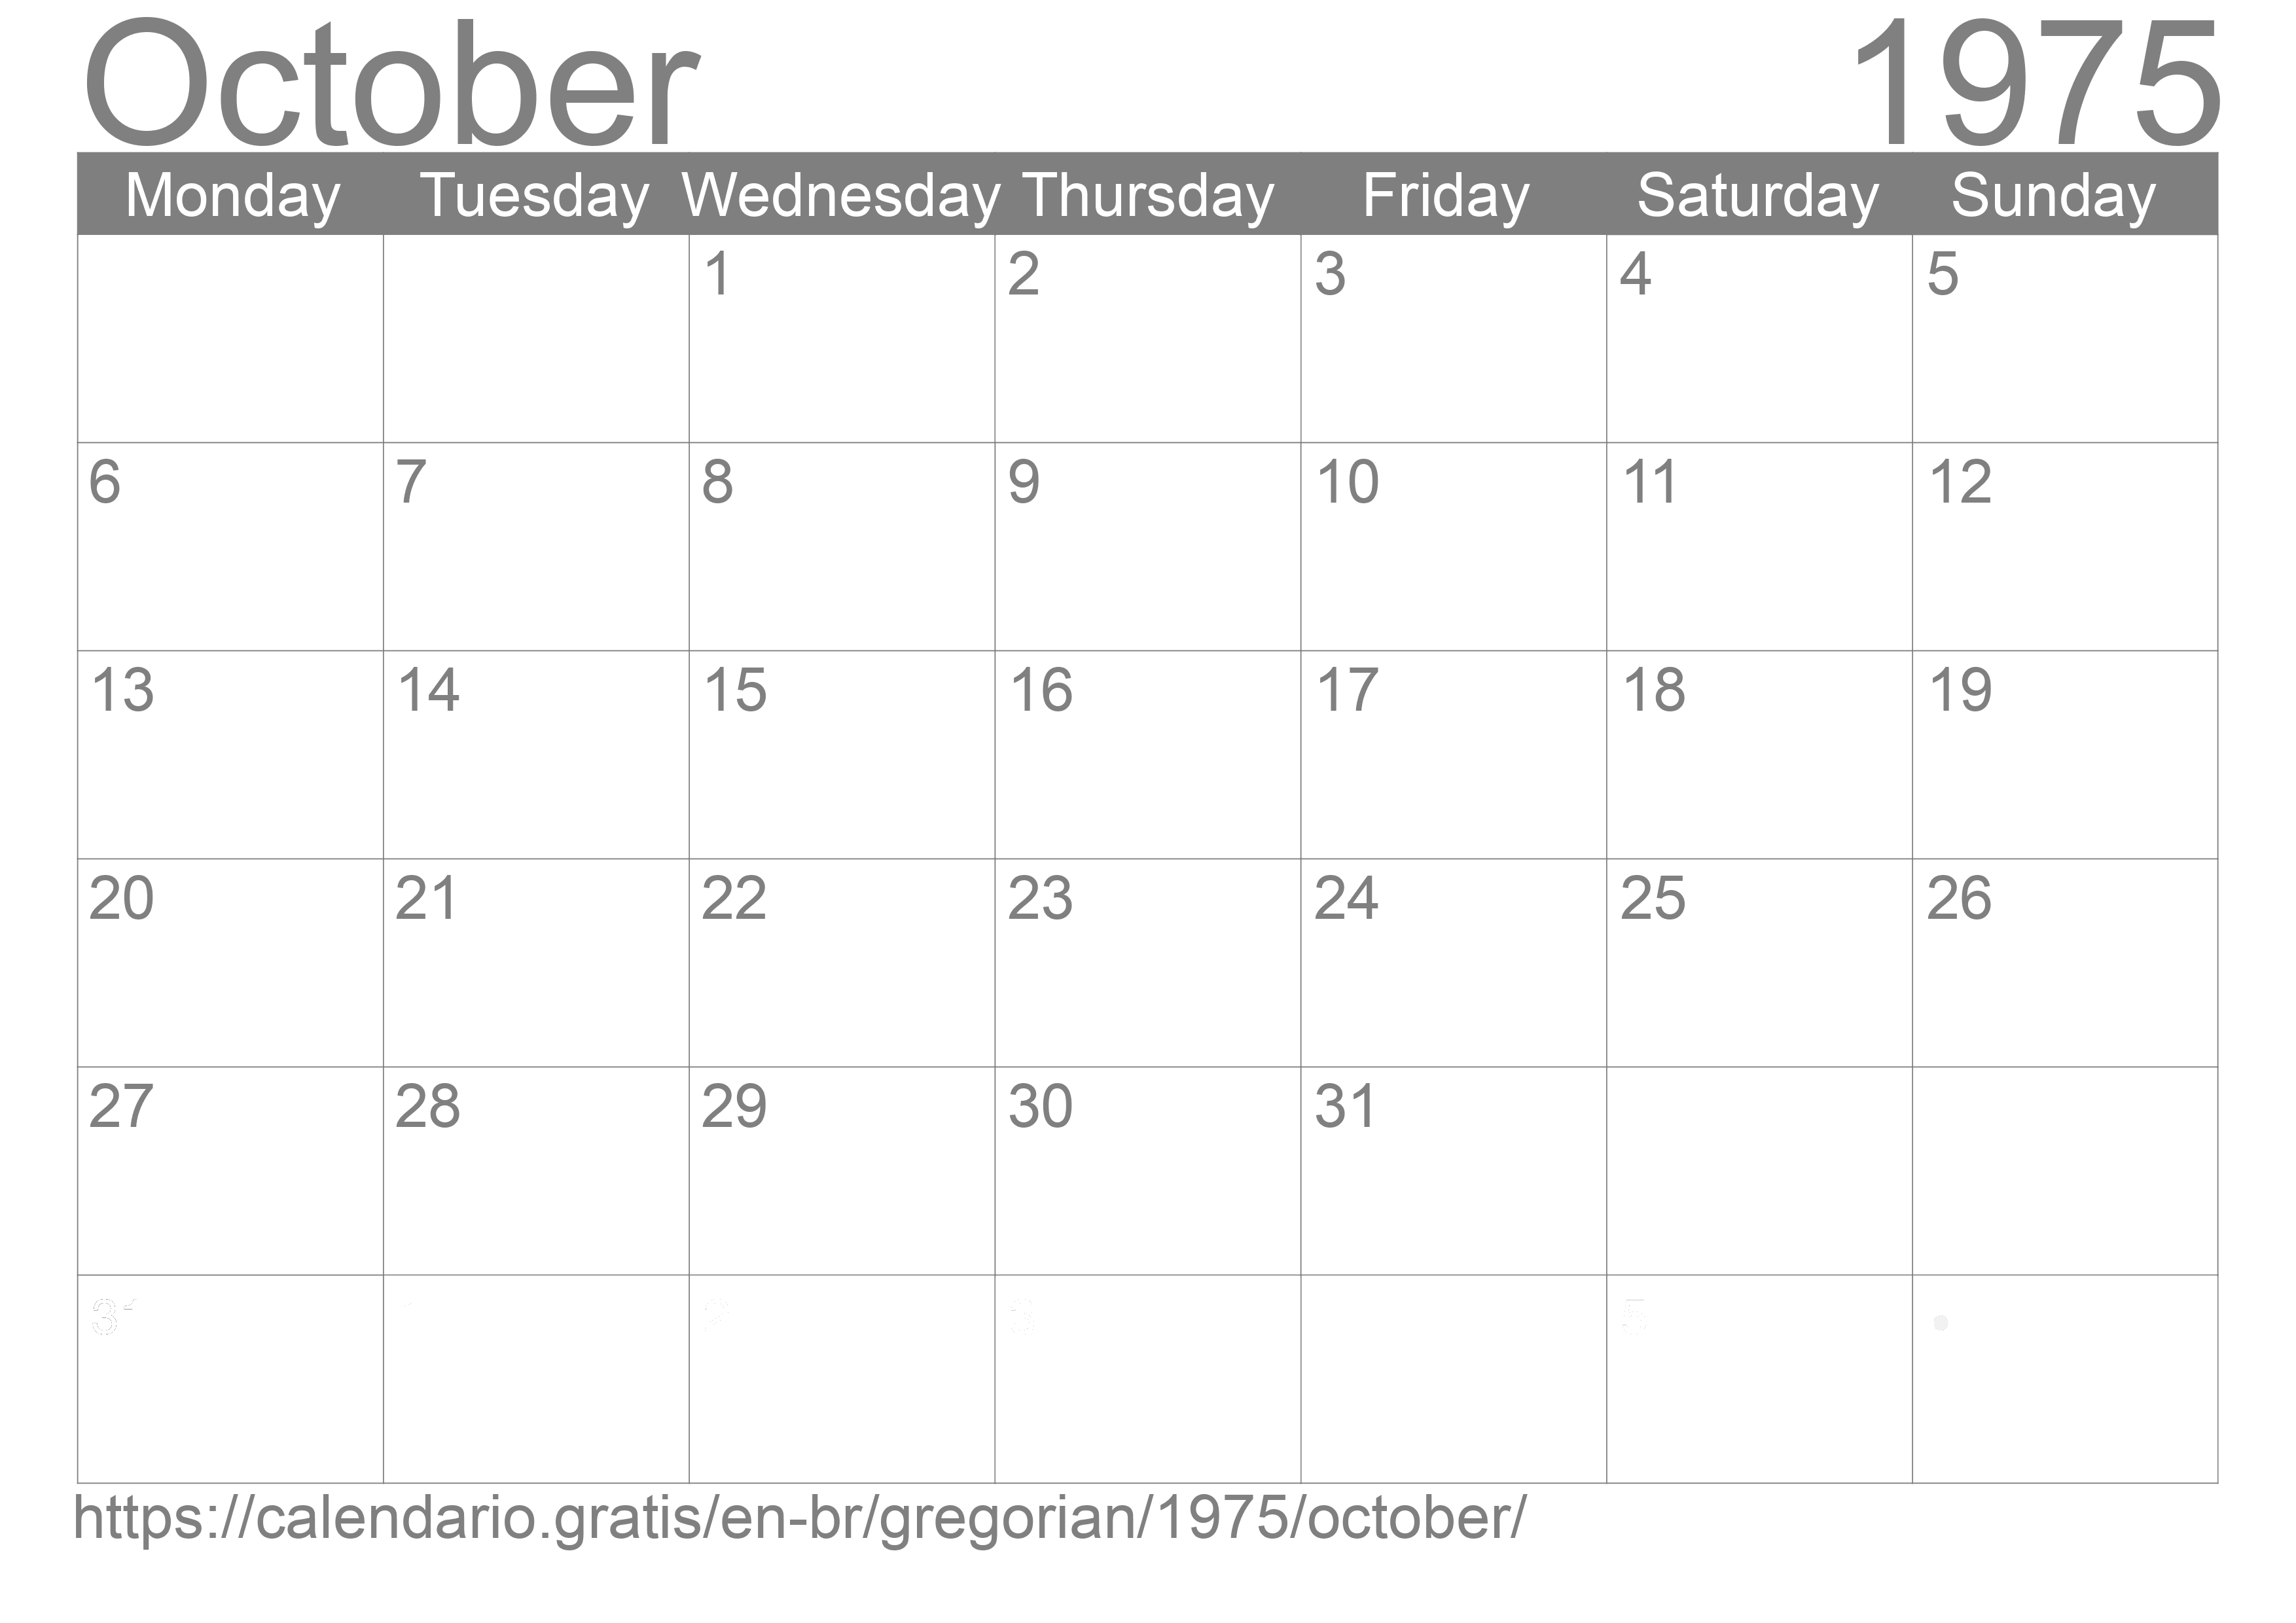 Calendar October 1975 to print